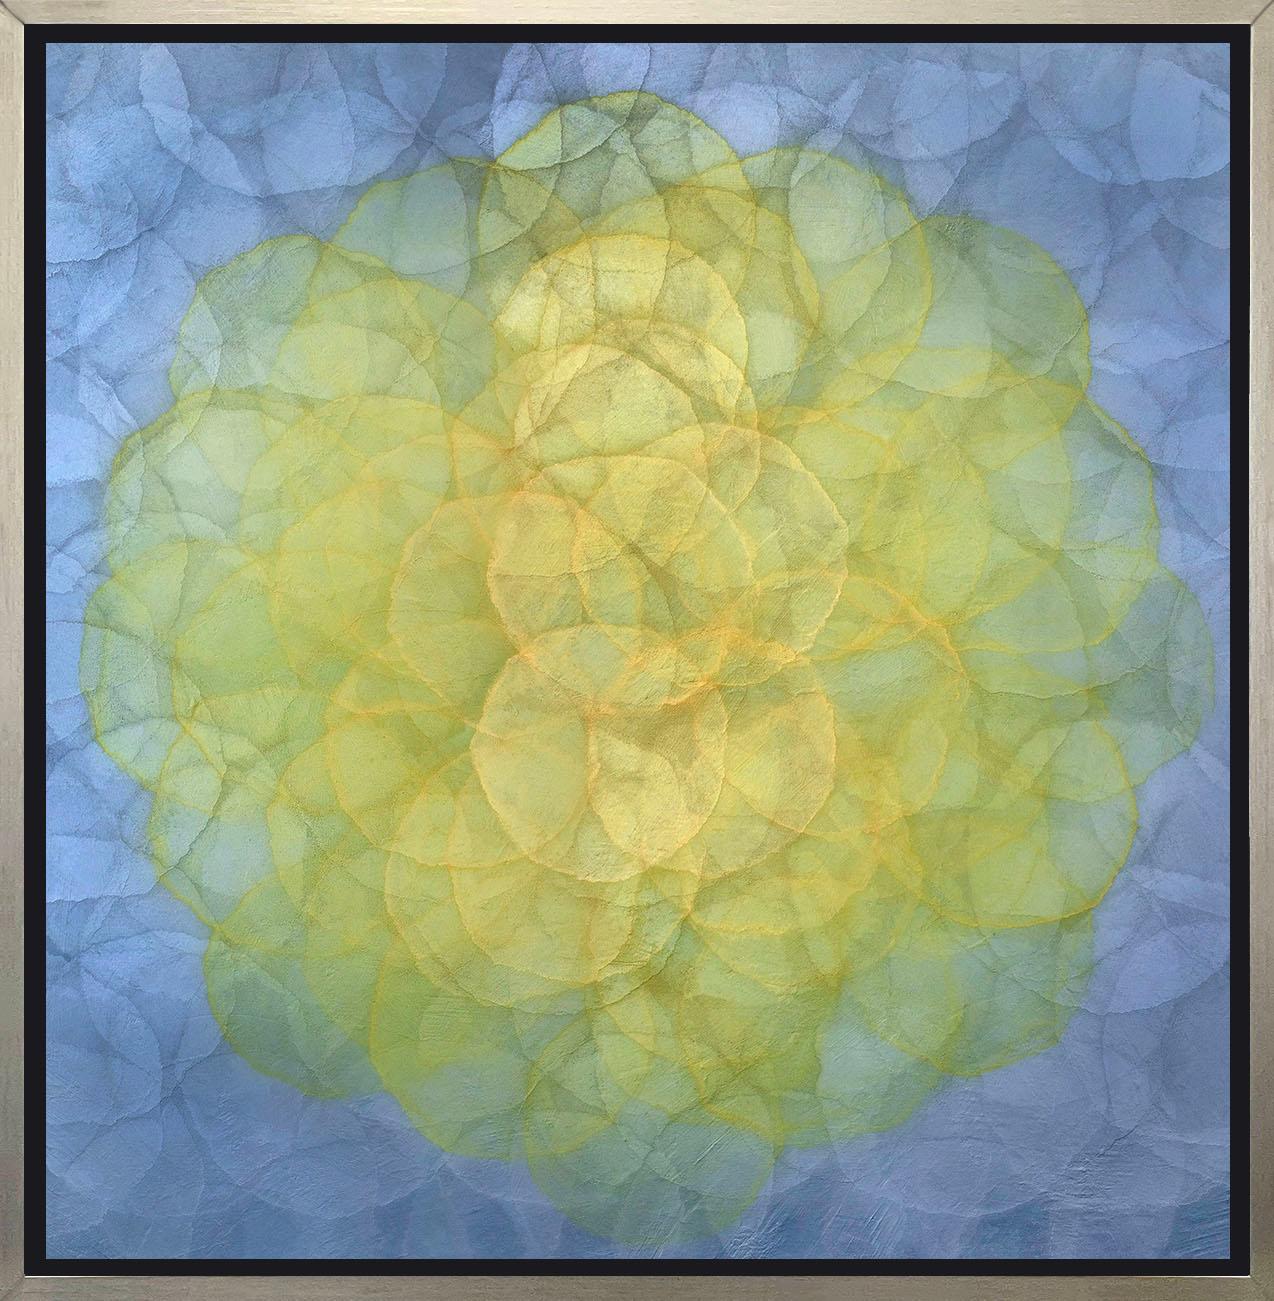 Abstract Print Roger Mudre - "Triteleia - Giclée à tirage limité encadrée, 40" x 40".